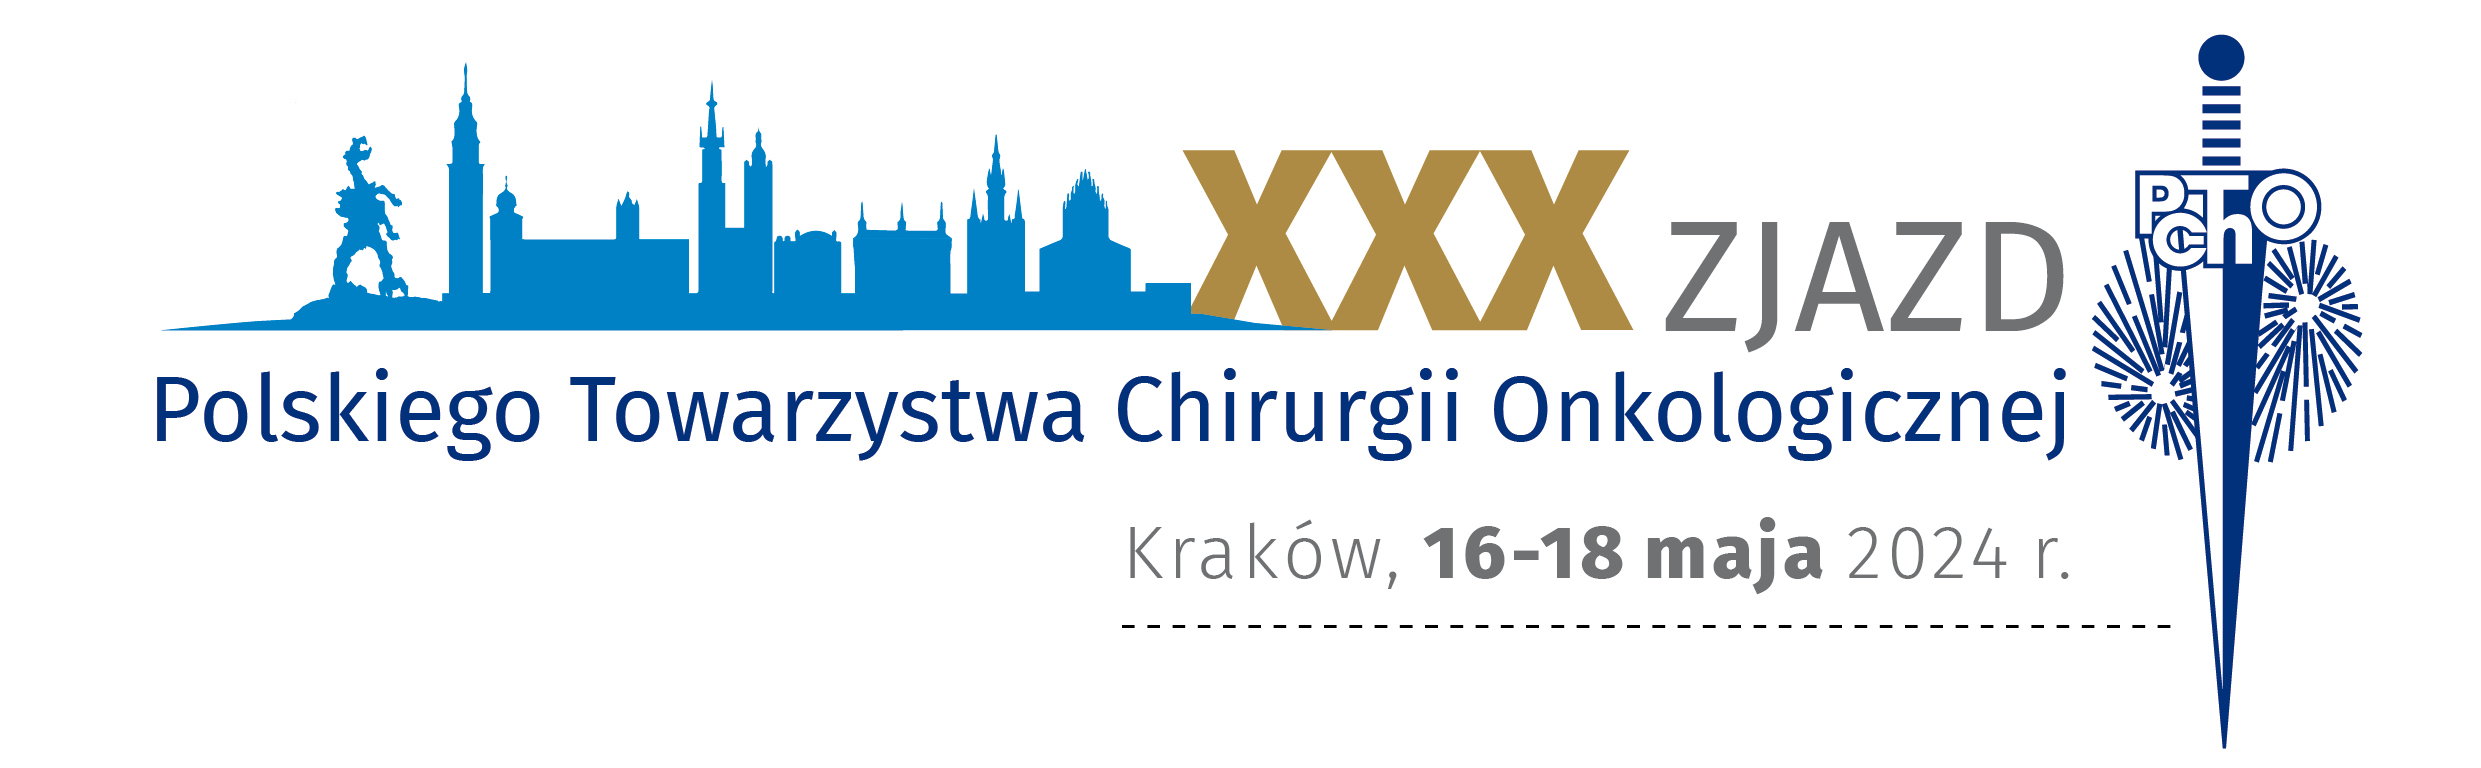 XXX Zjazd Polskiego Towarzystwa Chirurgii Onkologicznej XLI Konferencja Naukowo-Szkoleniowa PTChO